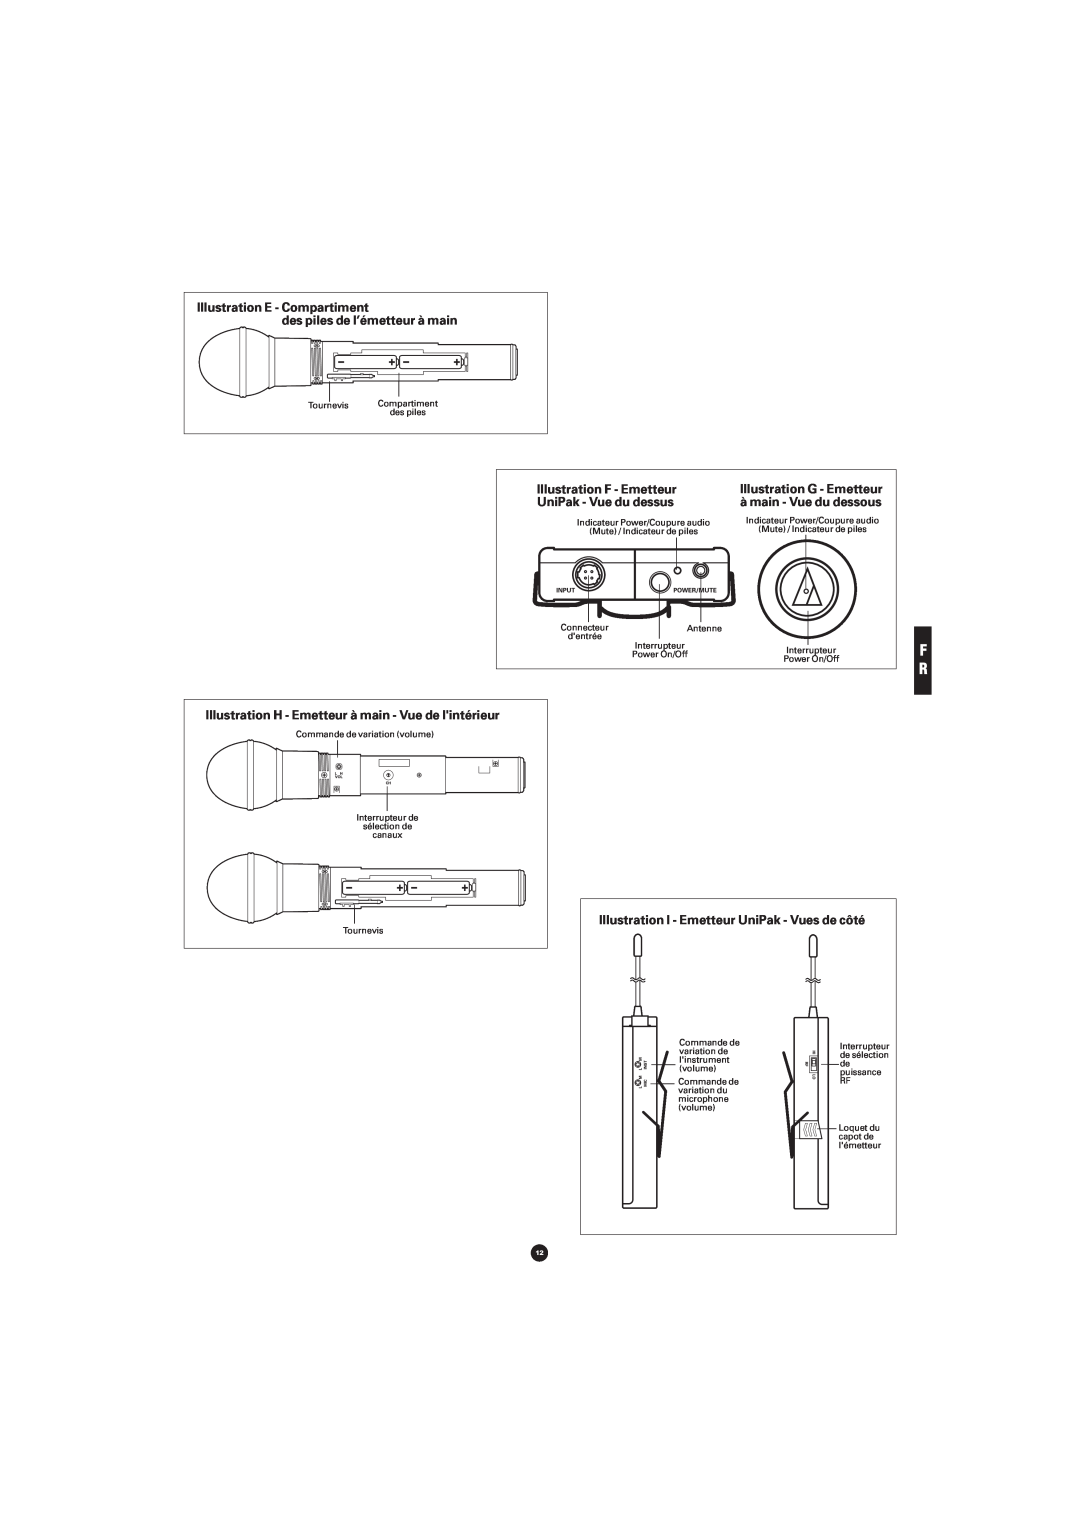 Audio-Technica ATW-701H, ATW-702 Illustration E - Compartiment des piles de l’émetteur à main, Illustration F - Emetteur 